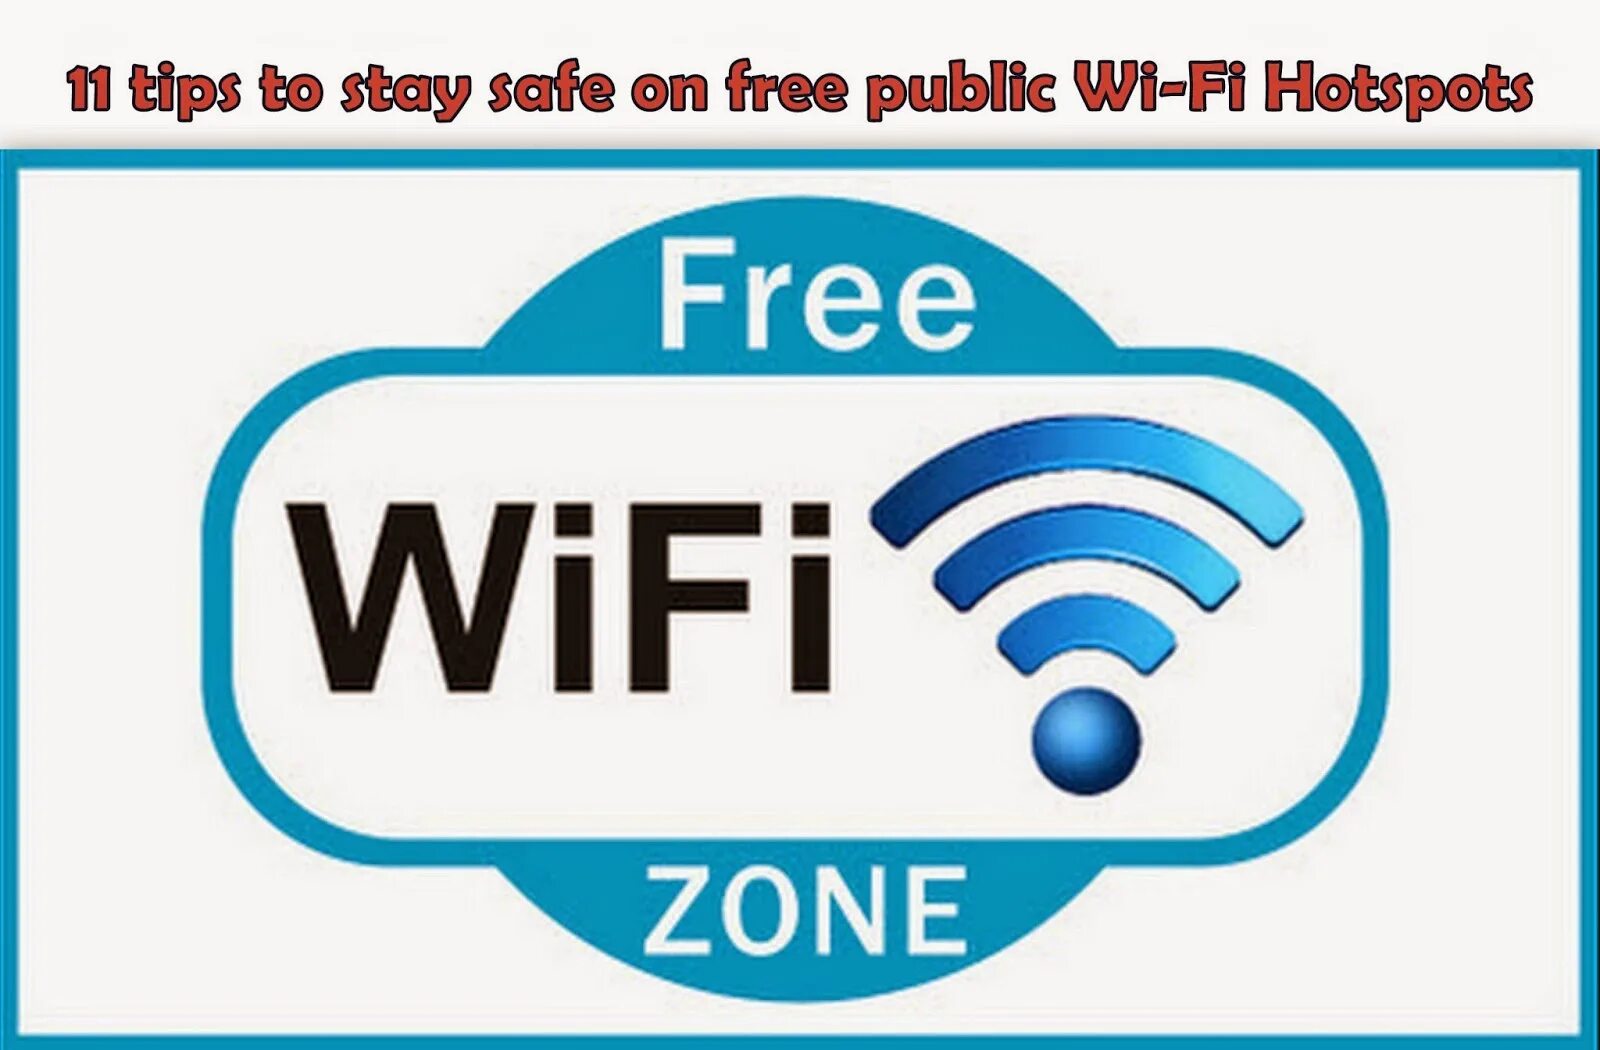 Fora pro wi fi. Wi-Fi логотип. Wi-Fi зона. Вай фай.